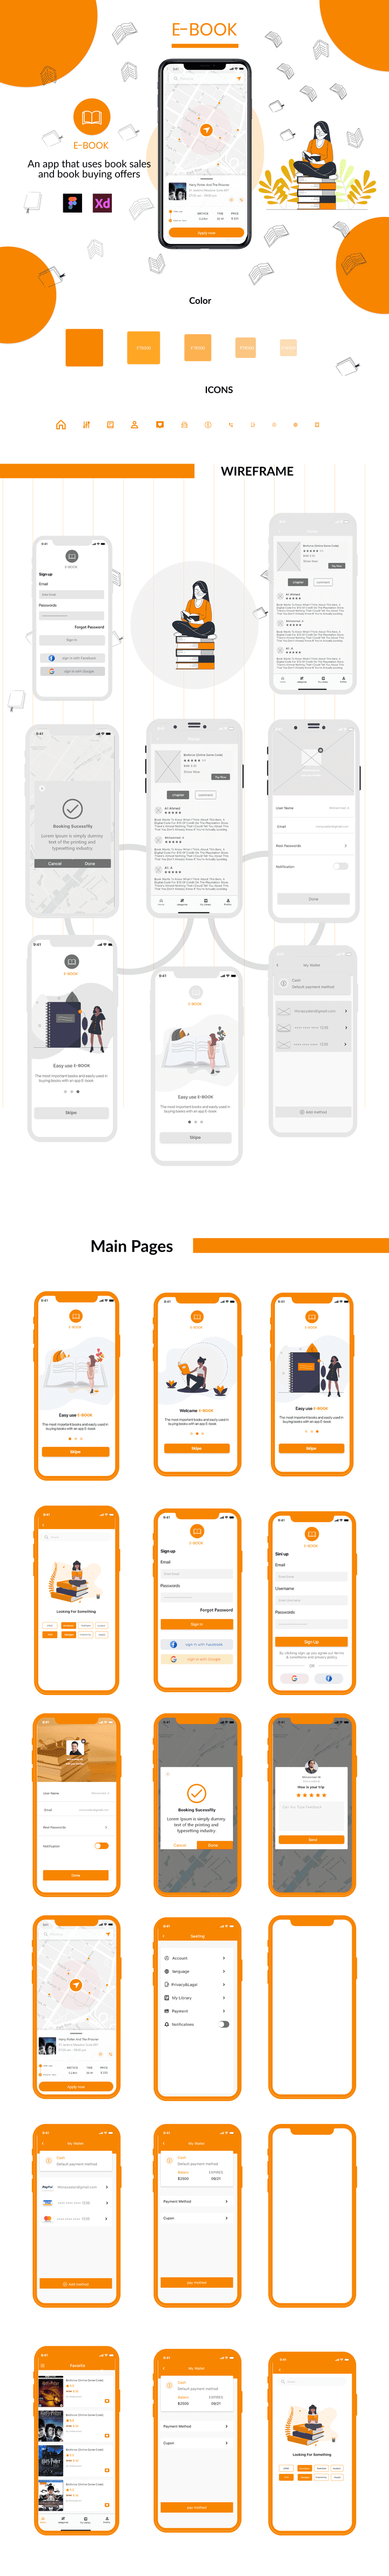 E-book App